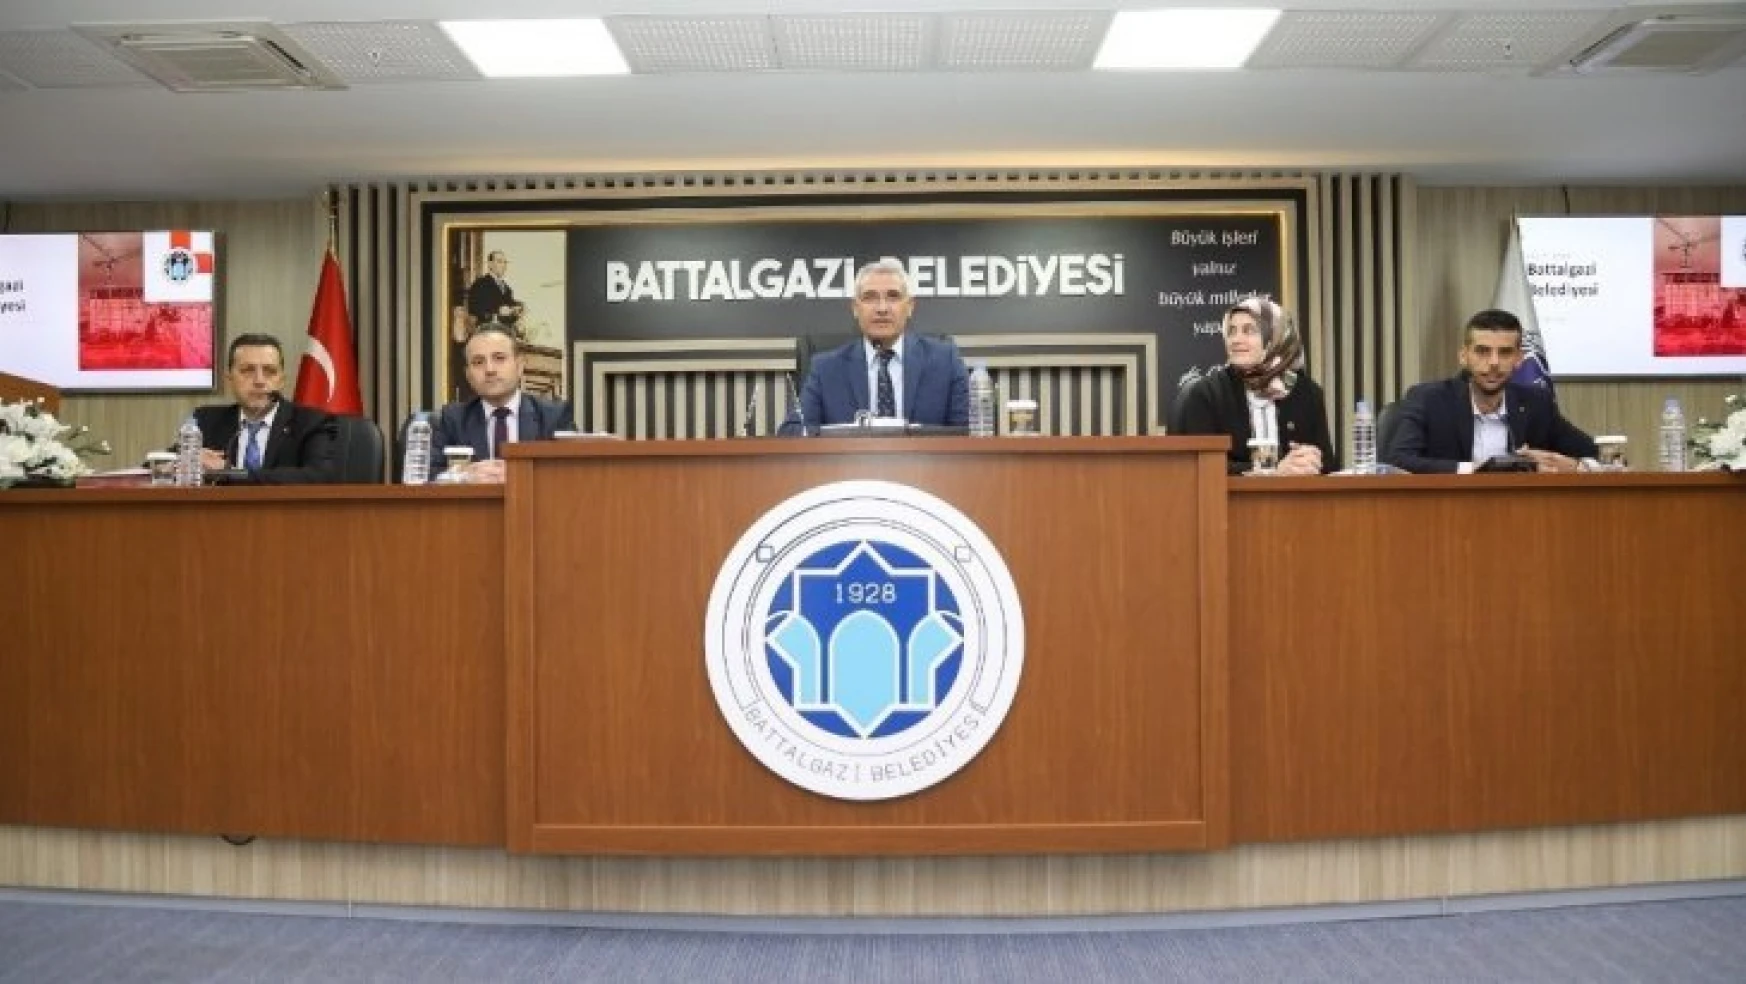 Battalgazi Belediyesi meclisi kasım ayı ilk toplantısını gerçekleştirdi